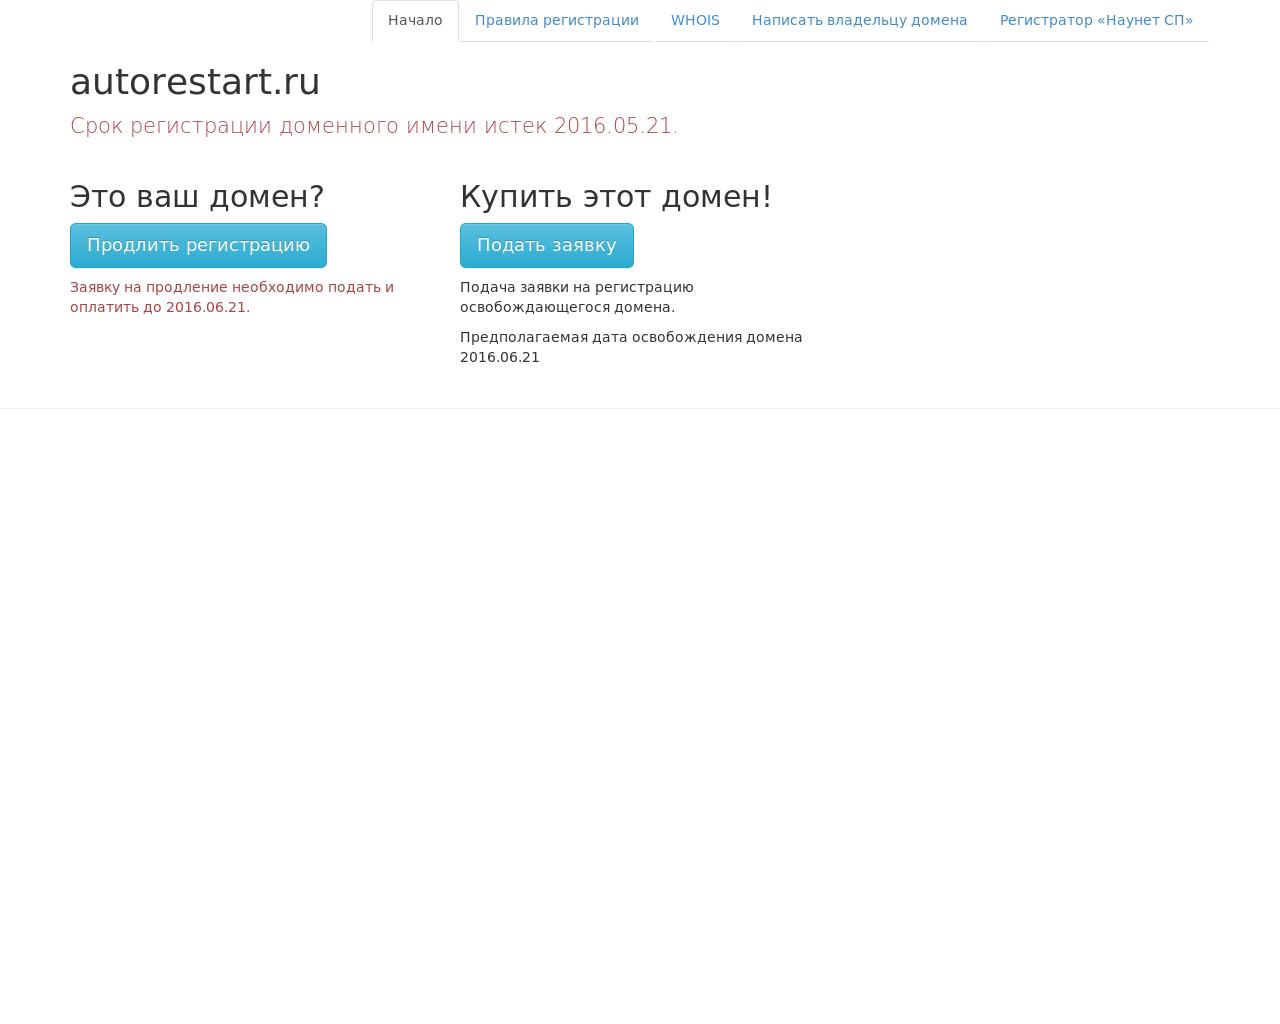 Изображение сайта autorestart.ru в разрешении 1280x1024